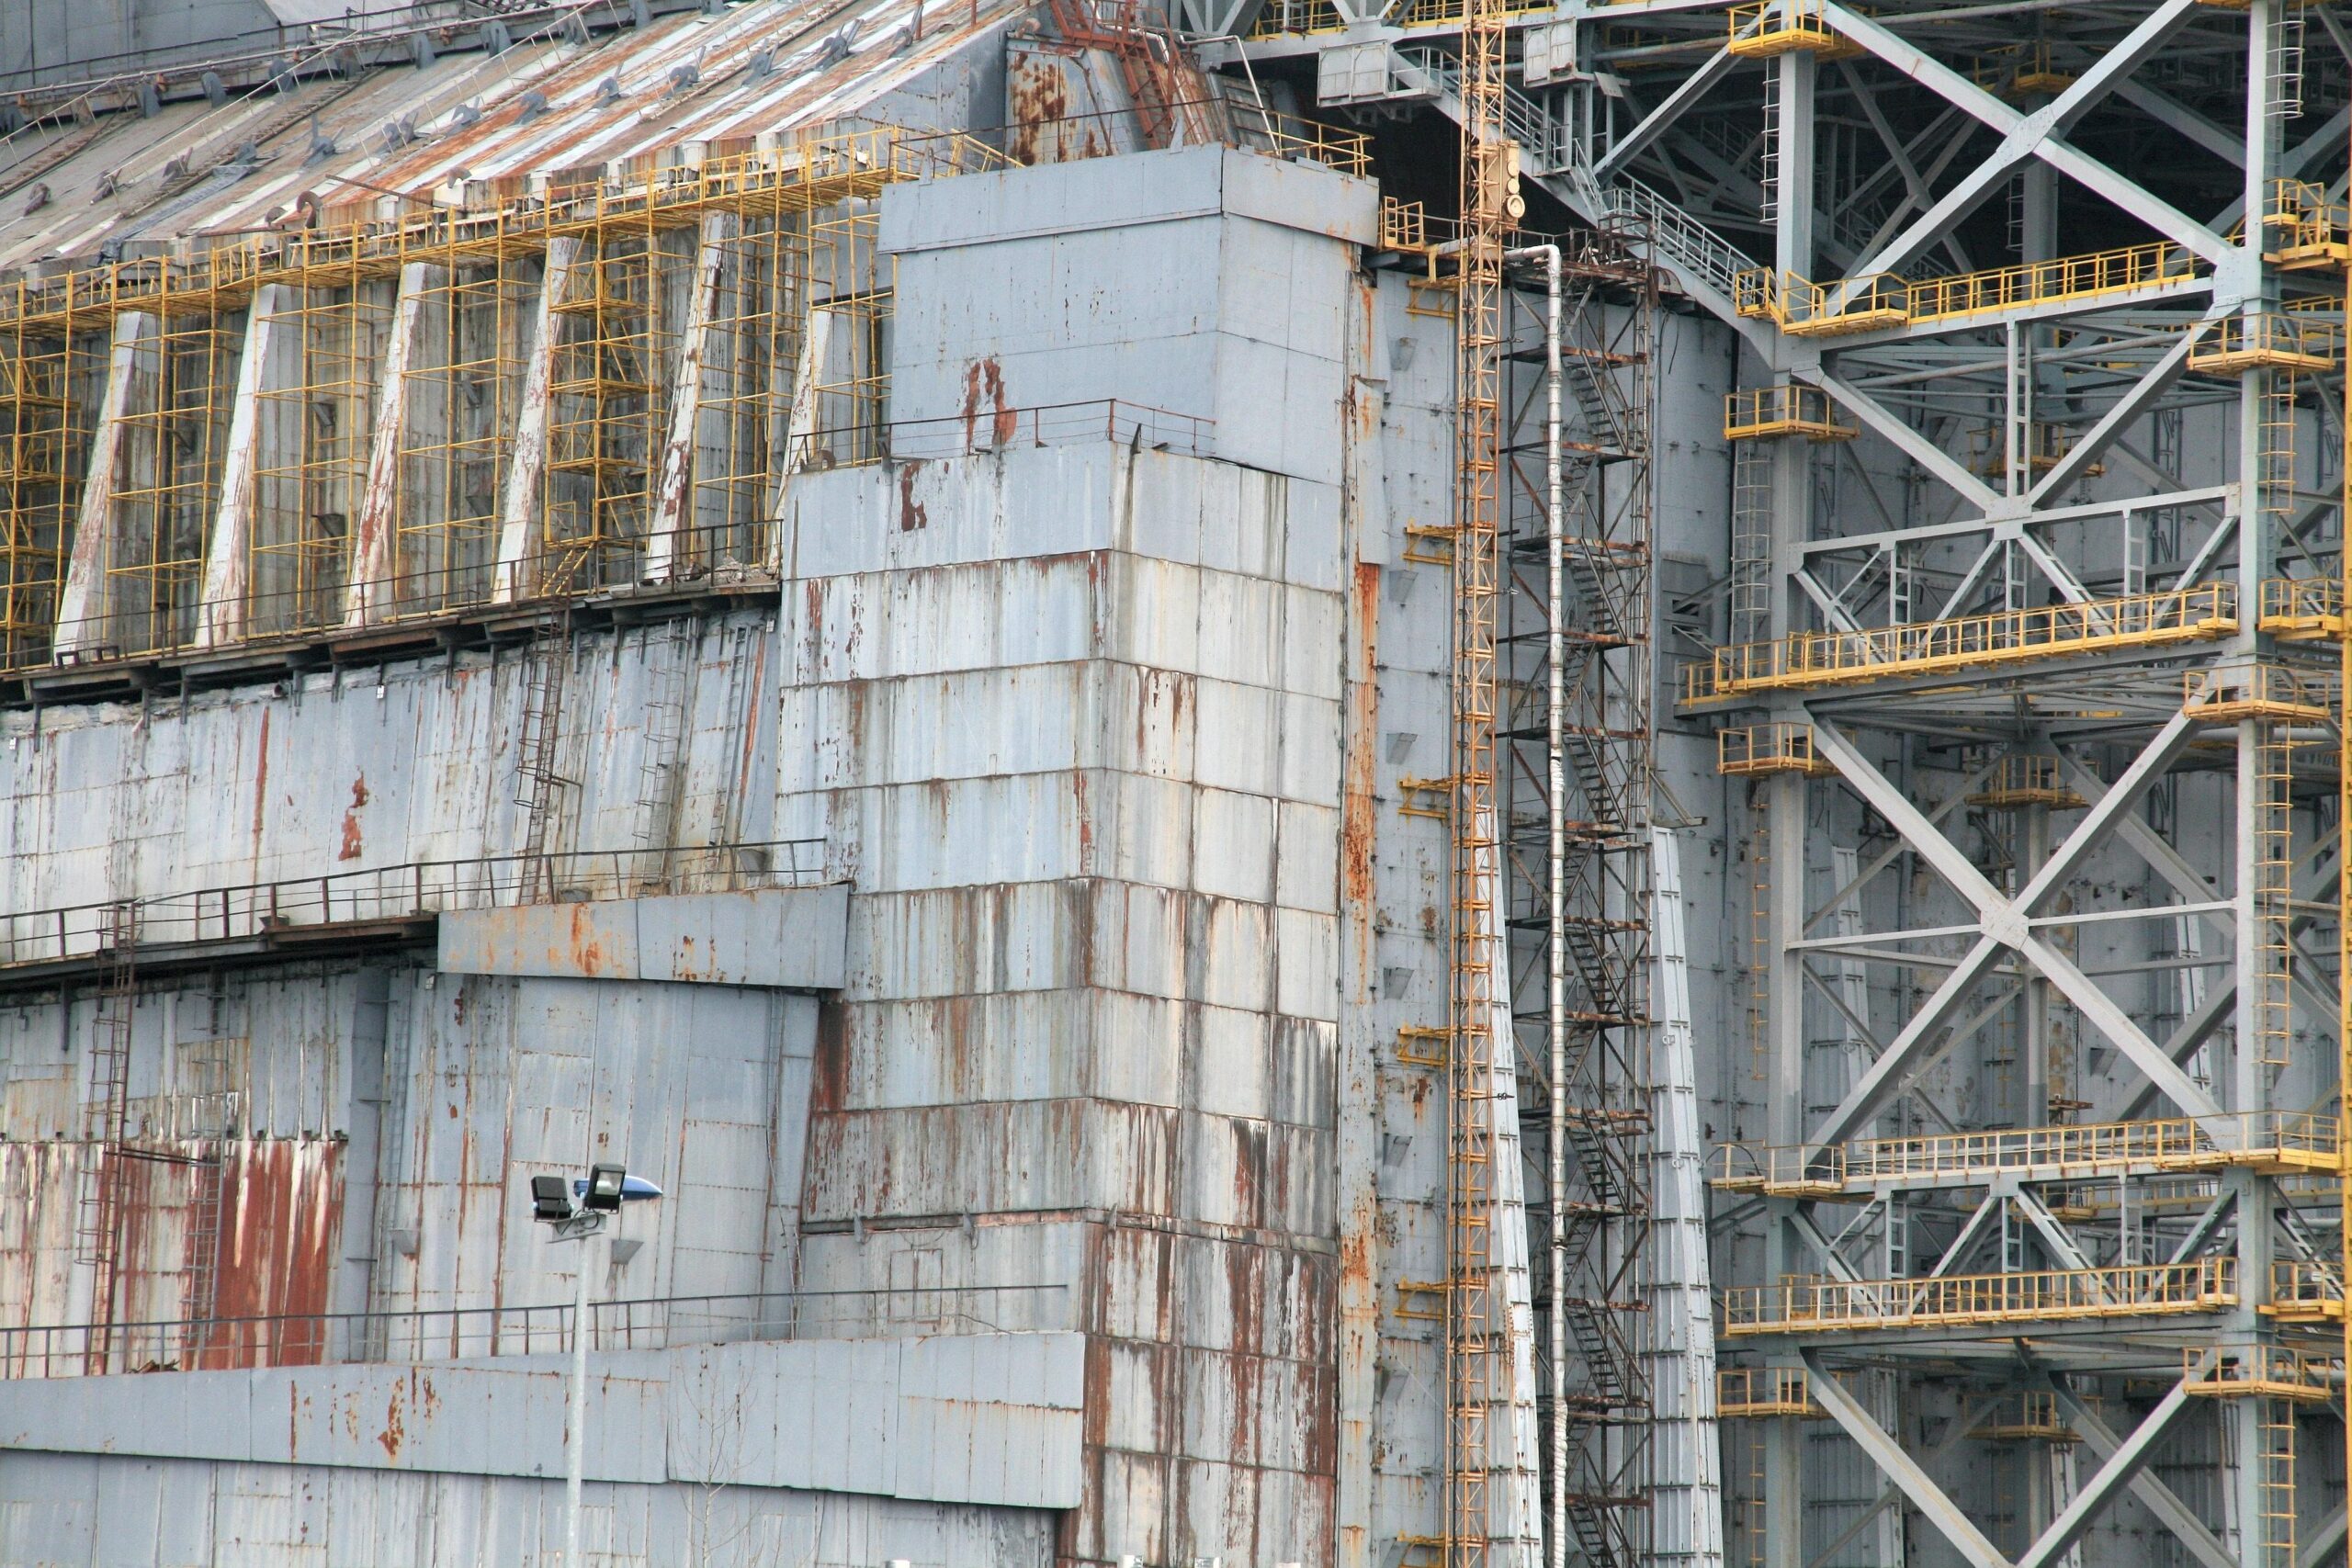 25 Jahre nach dem Unglück: Besuch in der Sperrzone von Tschernobyl.